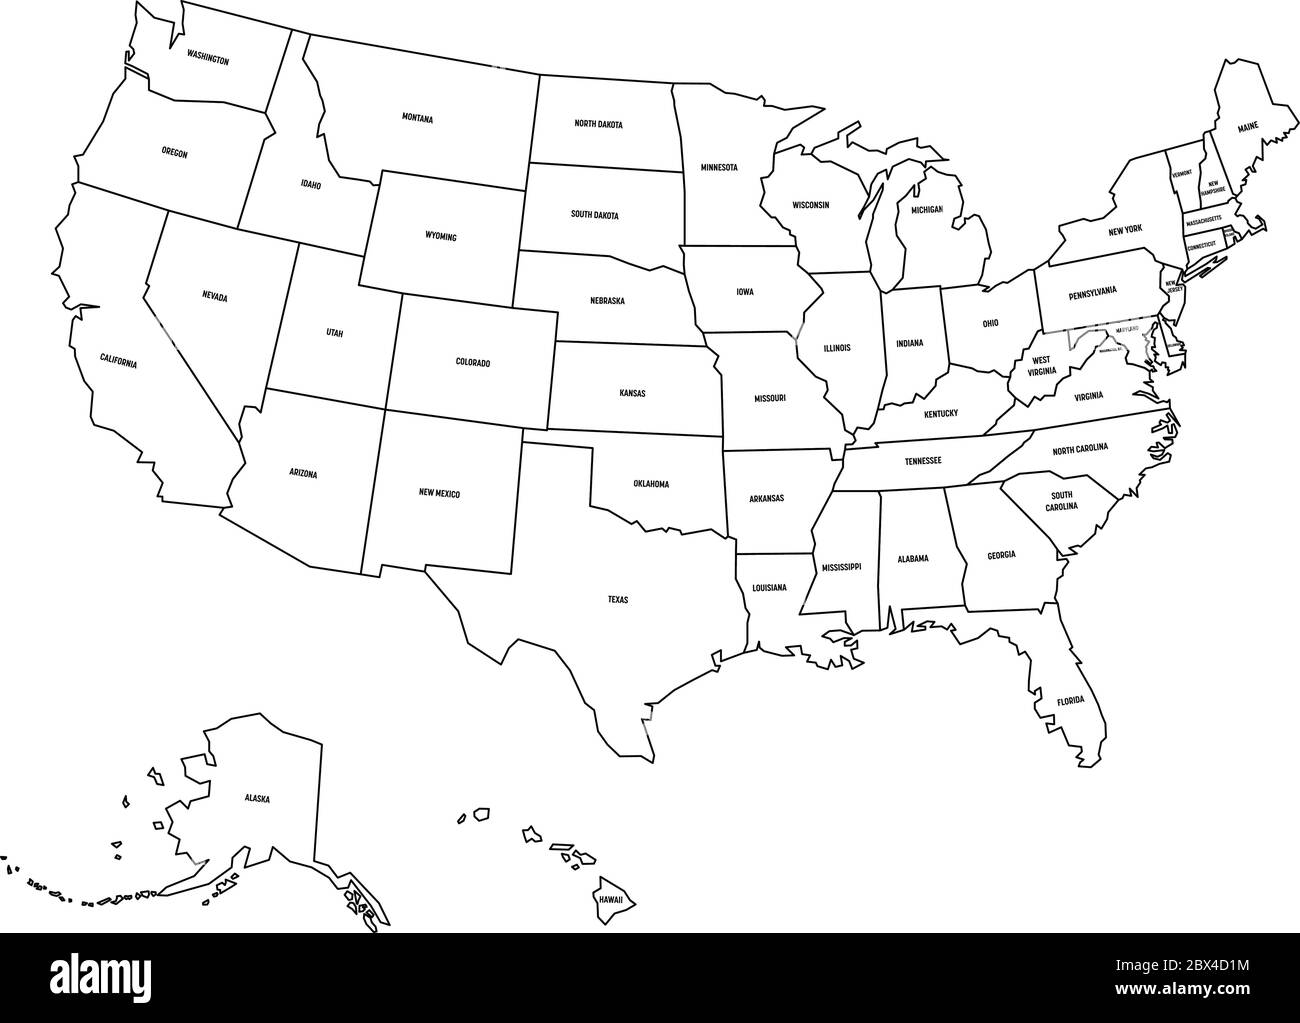 Gratis Descargable Mapa Vectorial De Estados Unidos De America Eps Pdmrea